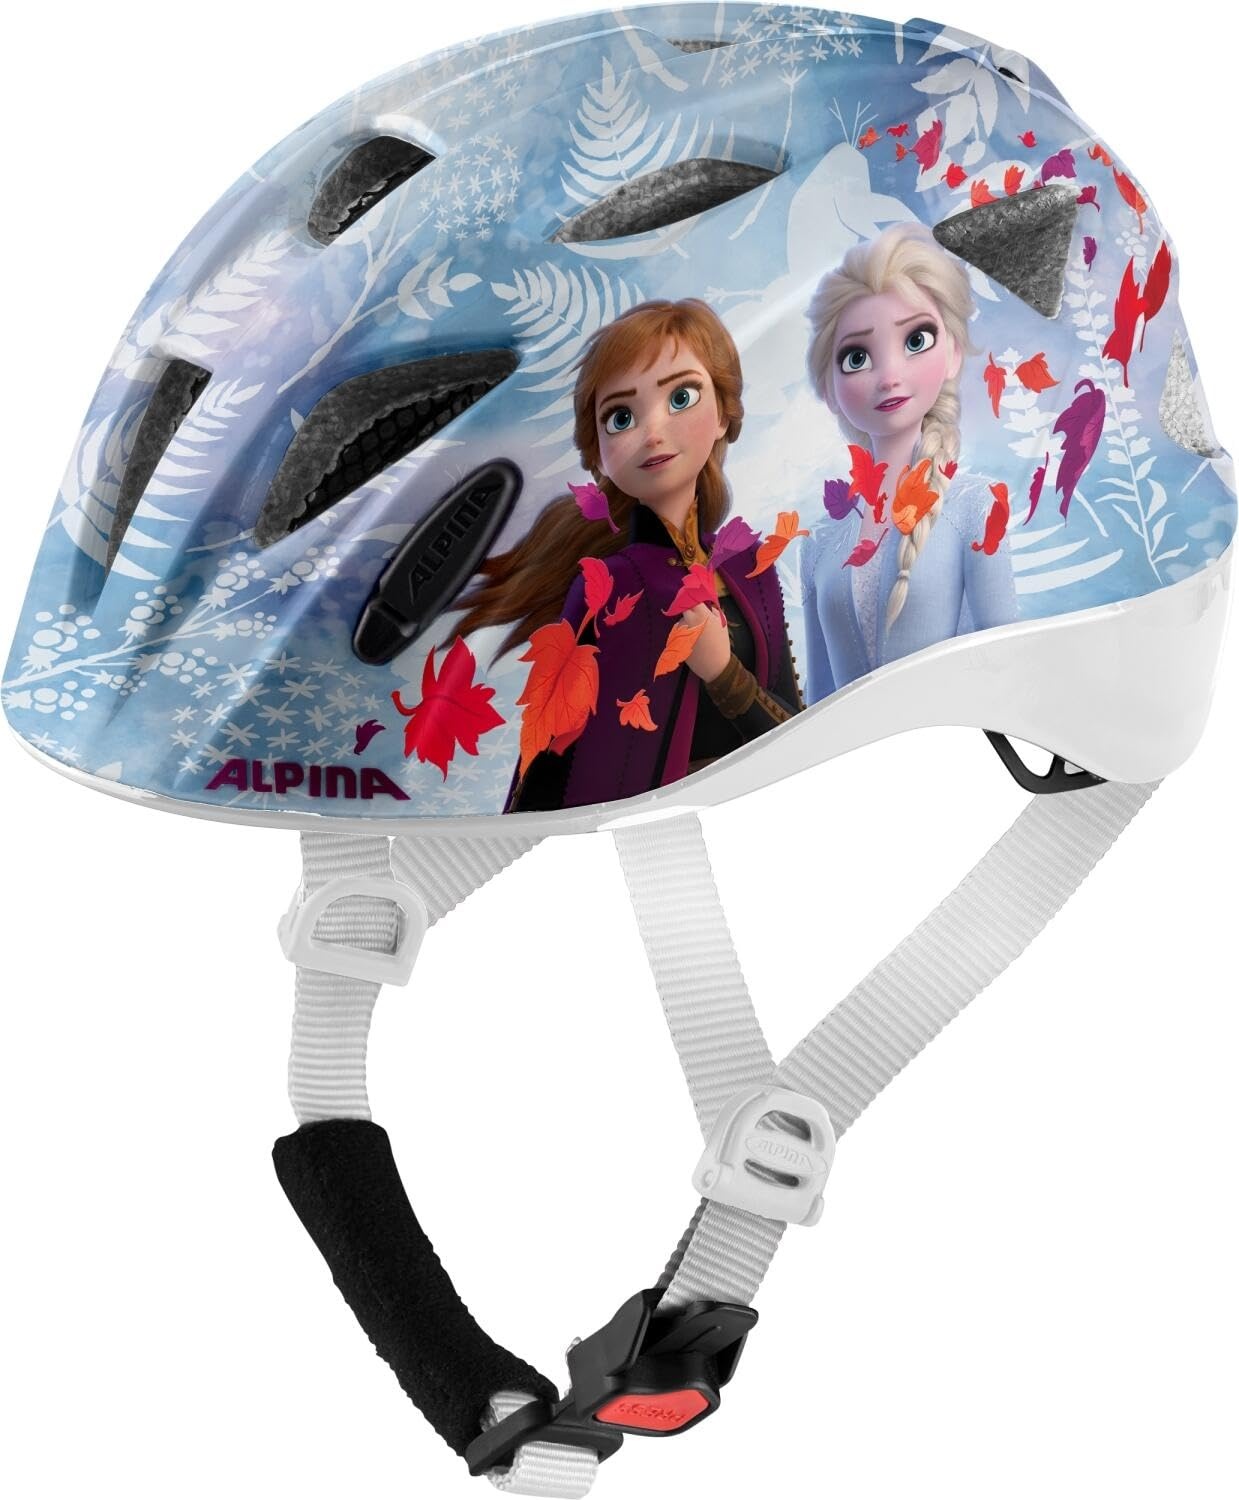 ALPINA XIMO DISNEY - Leichter, Sicherer & Bruchfester Disney Fahrradhelm Mit Optionalen LED-Licht Für Kinder, Frozen II gloss, 49-54 cm